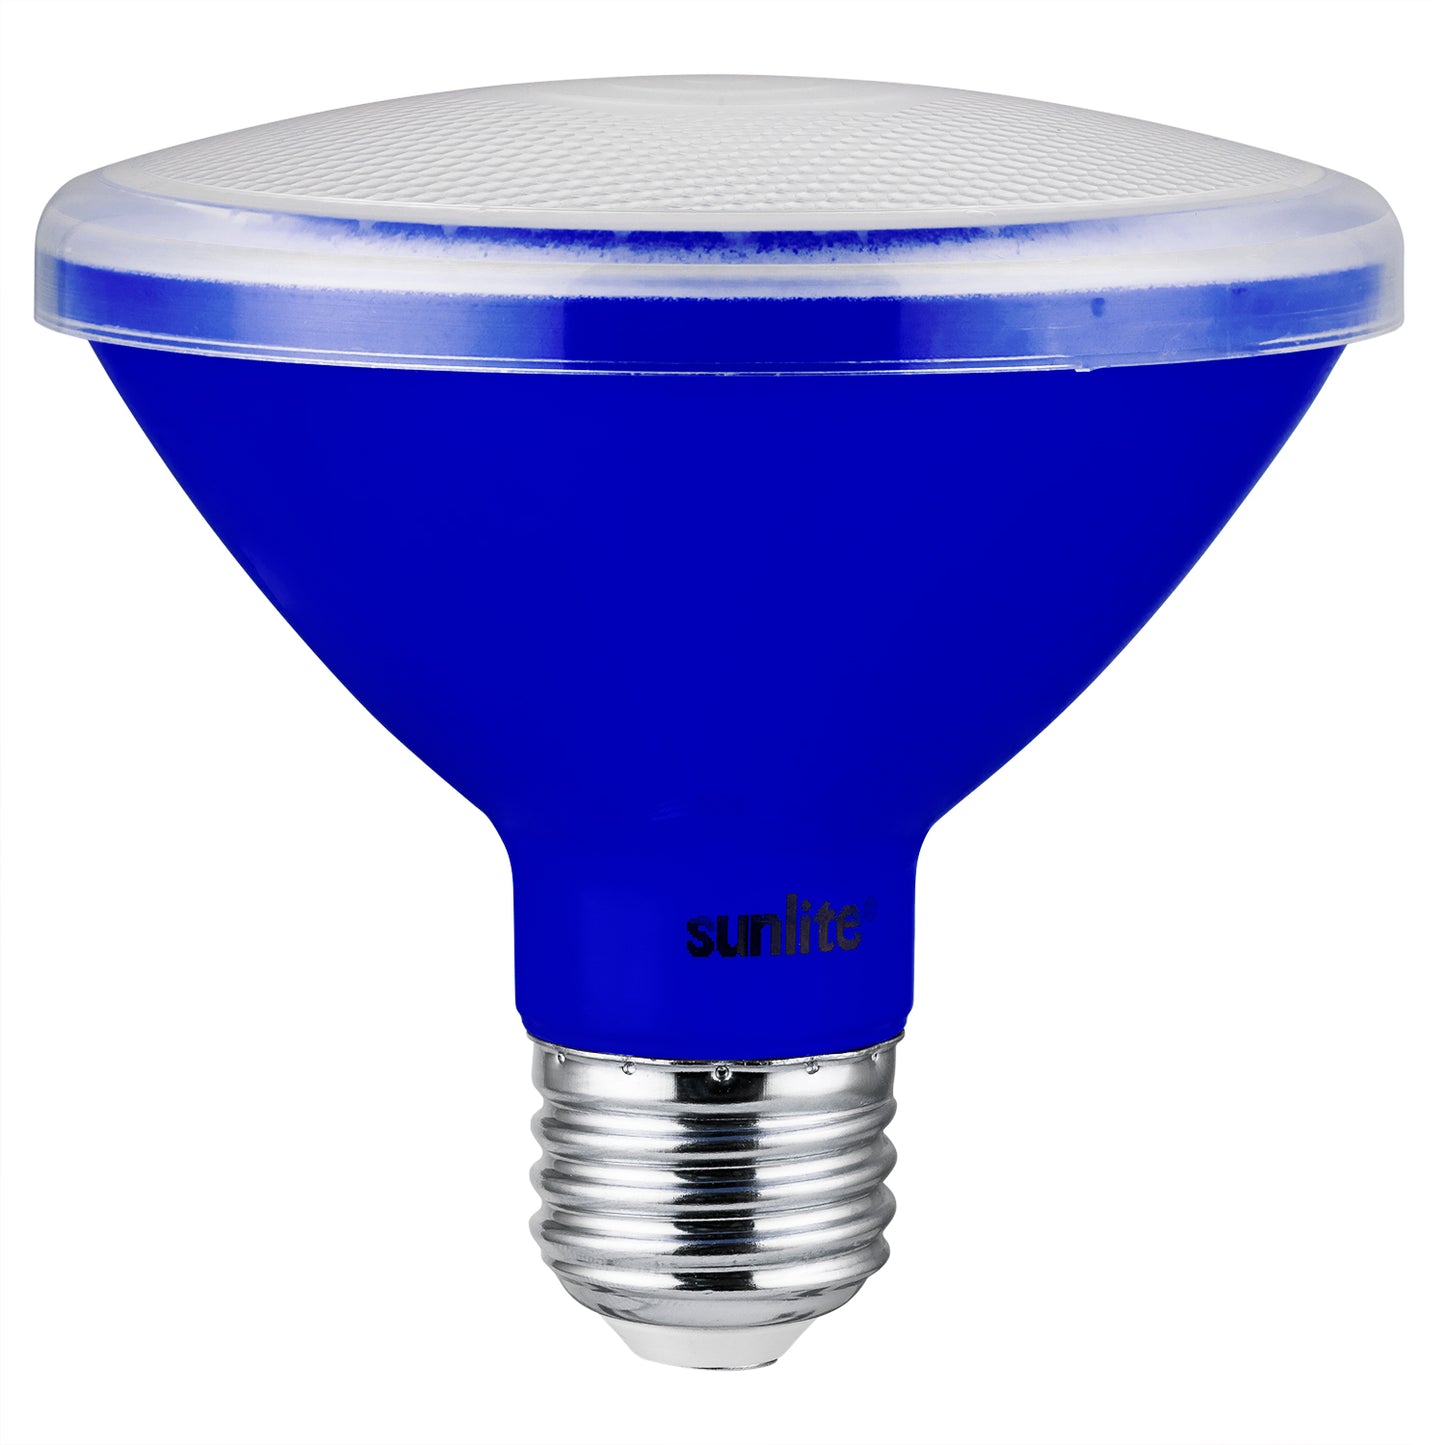 Sunlite 81472 LED PAR30 Short Neck Colored Recessed Light Bulb, 8 Watt (75W Equivalent), Medium (E26) Base, Floodlight, ETL Listed, Blue, 1 pack